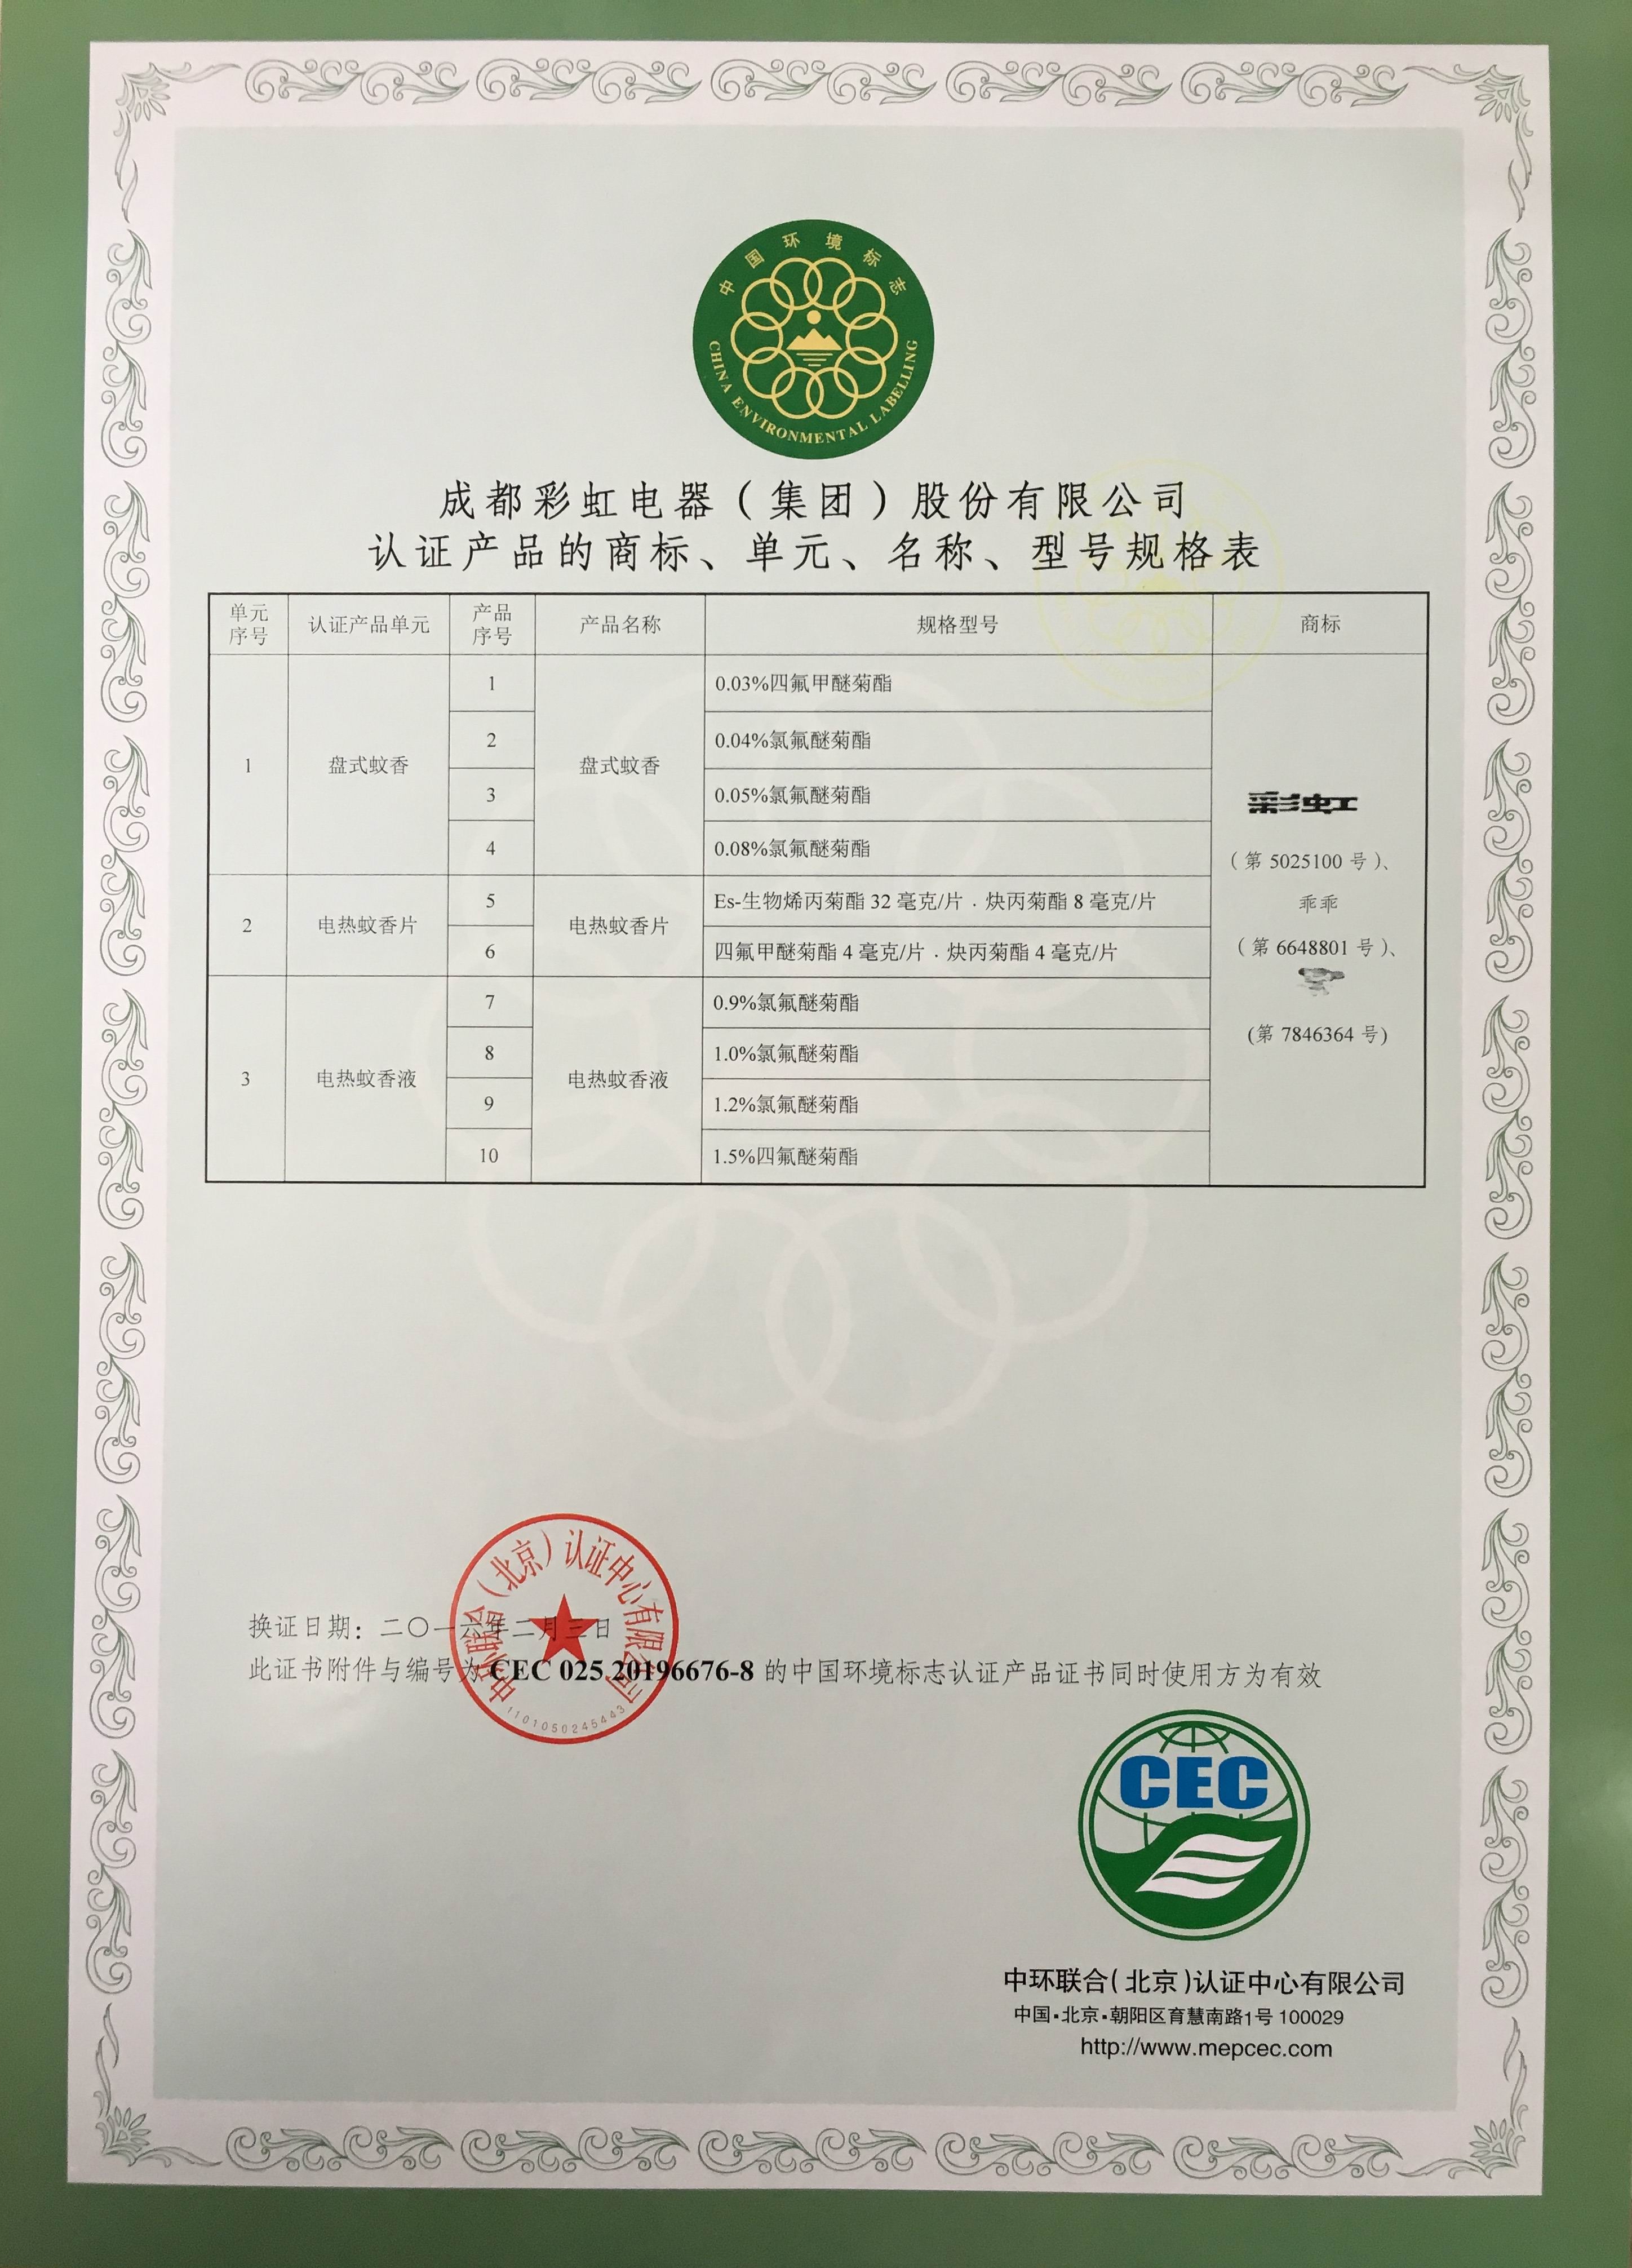 成都彩虹集團盤式蚊香產品榮獲中國環境標志產品認證證書